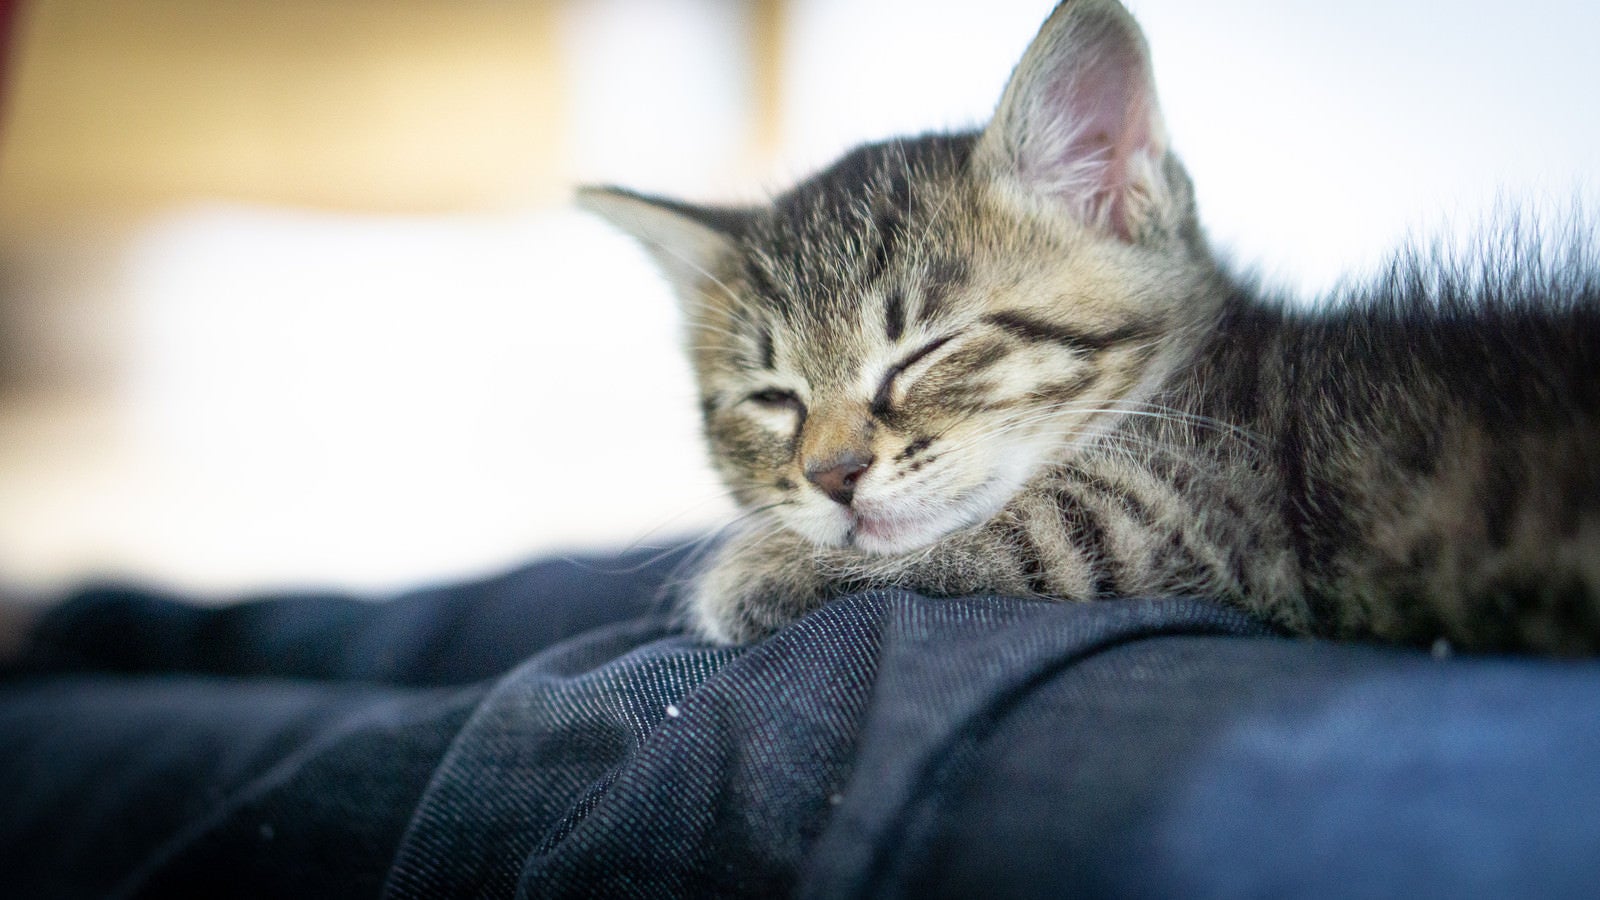 「ソファーで寝落ちする子猫ちゃん | フリー素材のぱくたそ」の写真